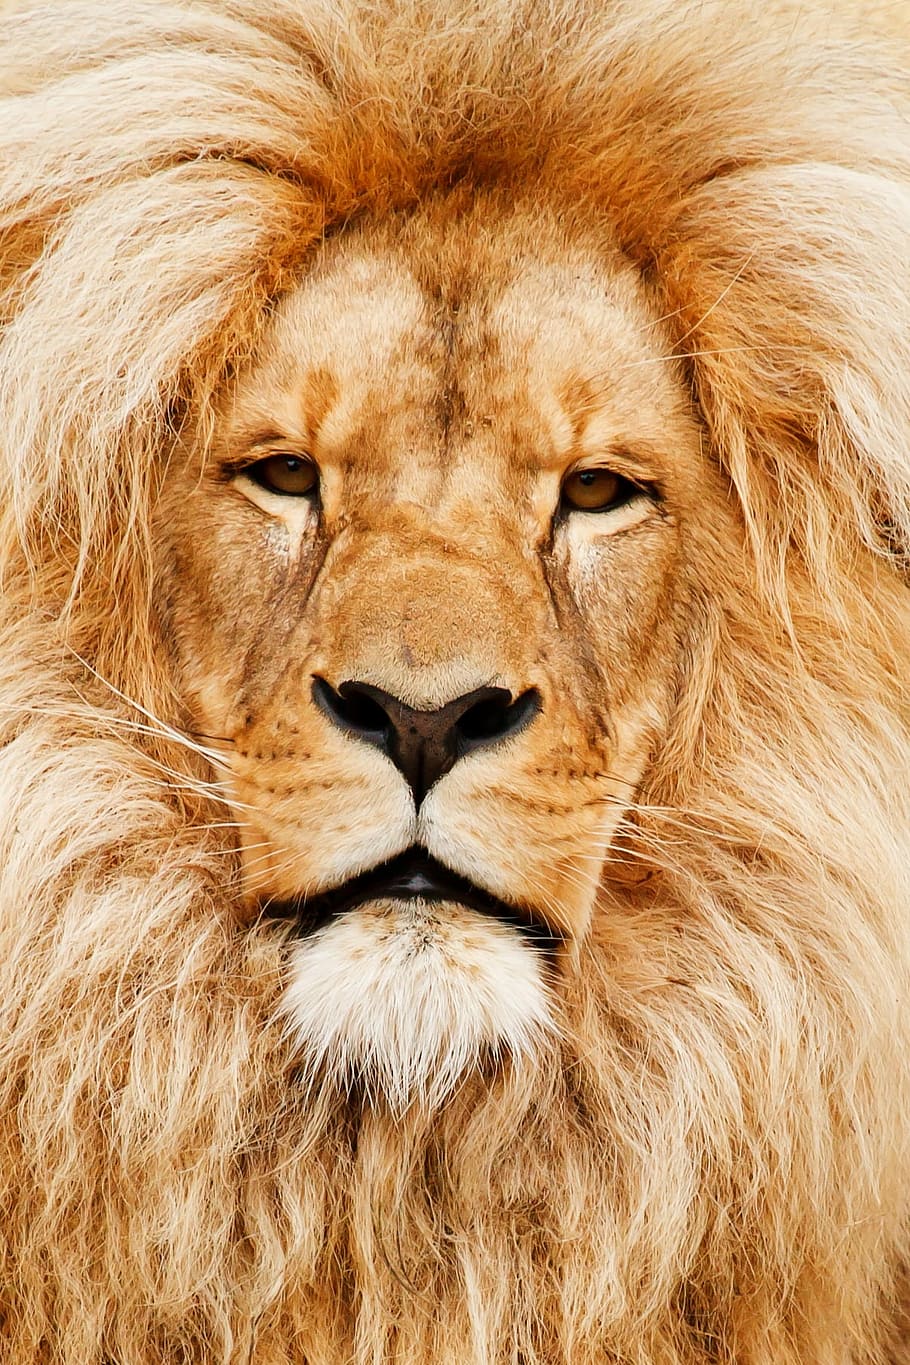 león de oro, áfrica, africano, animal, gato, primer plano, detalle, ojo, ojos, cara